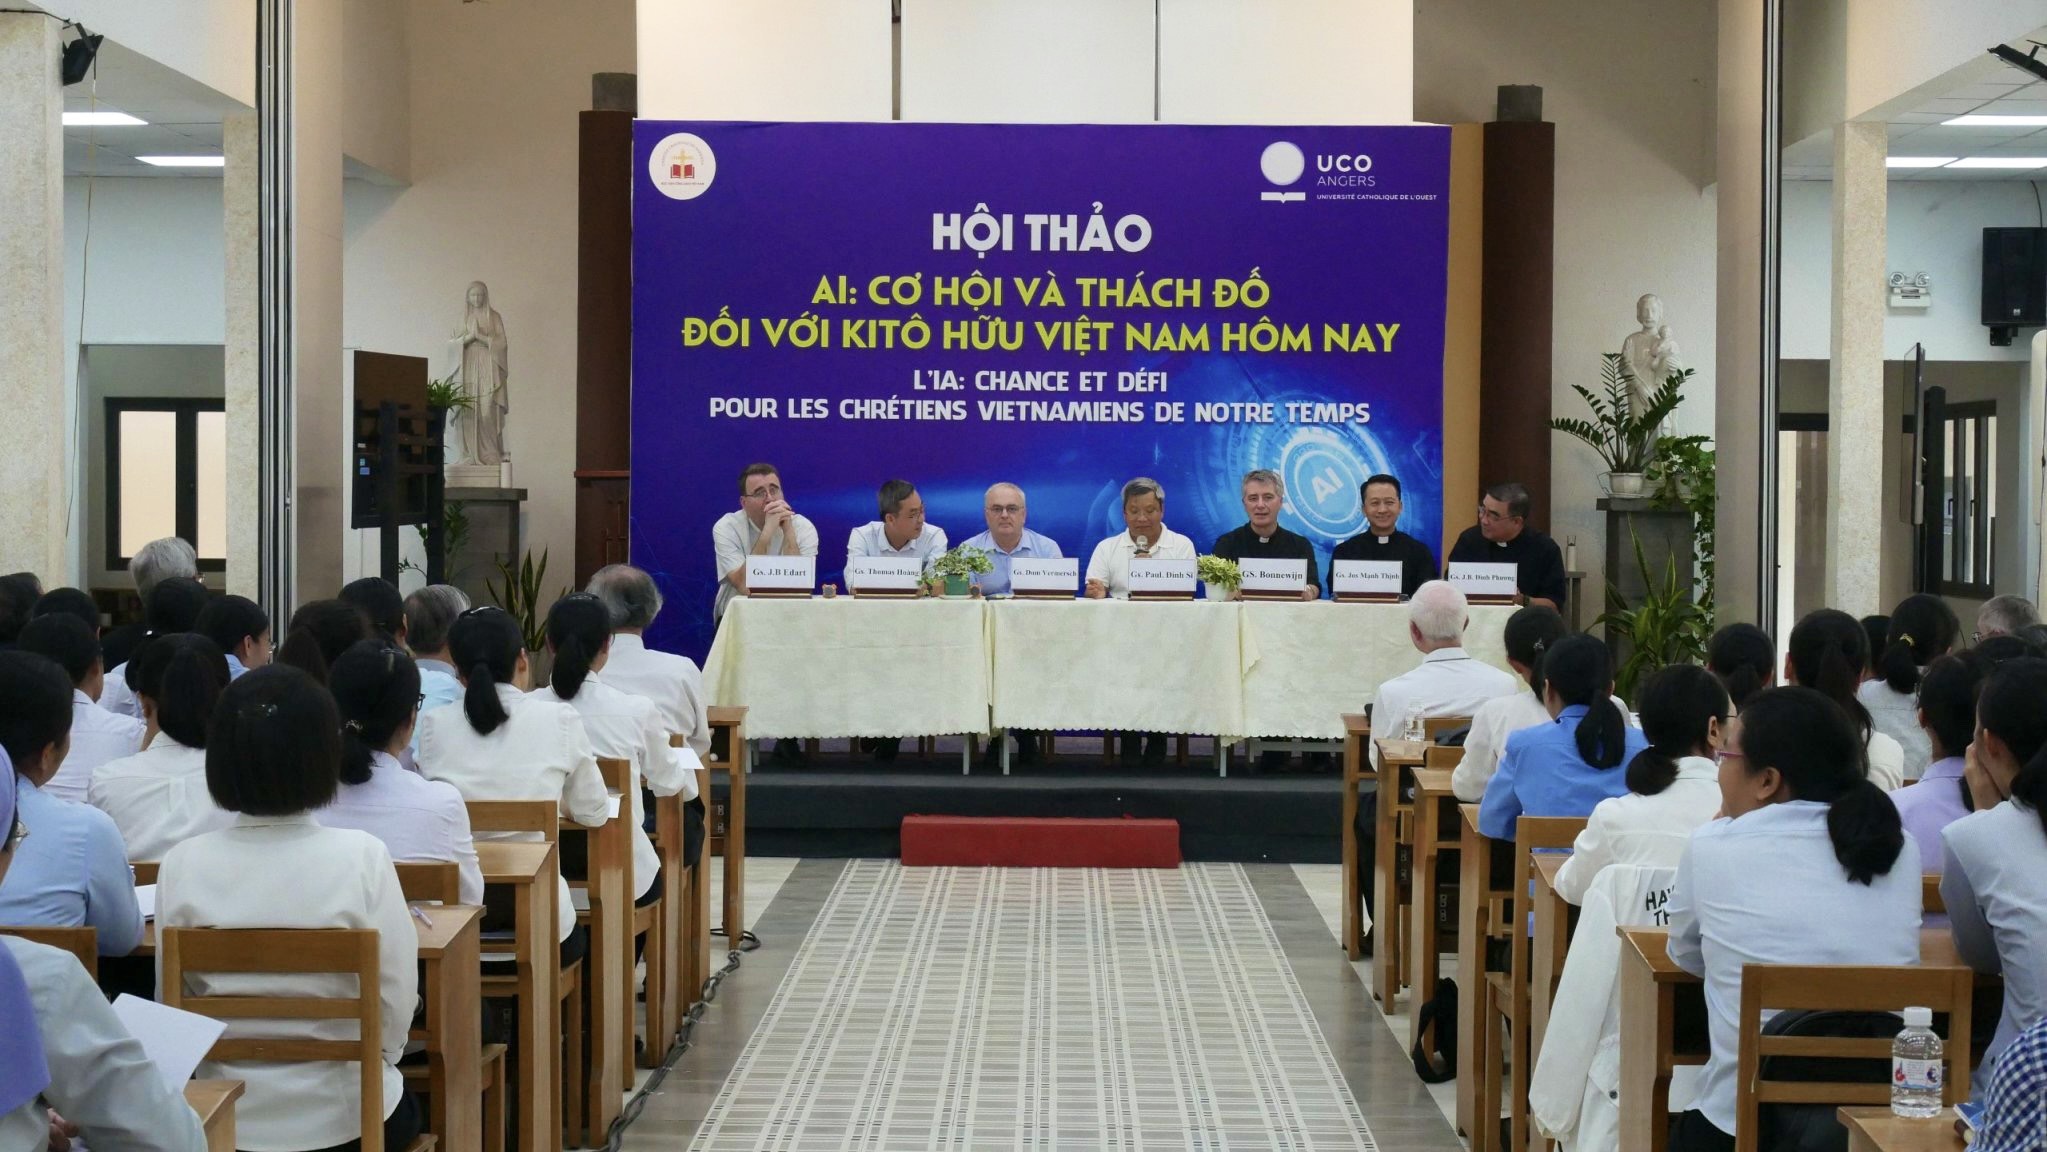 Hội thảo: Trí tuệ nhân tạo – Cơ hội và thách đố đối với Kitô hữu Việt Nam